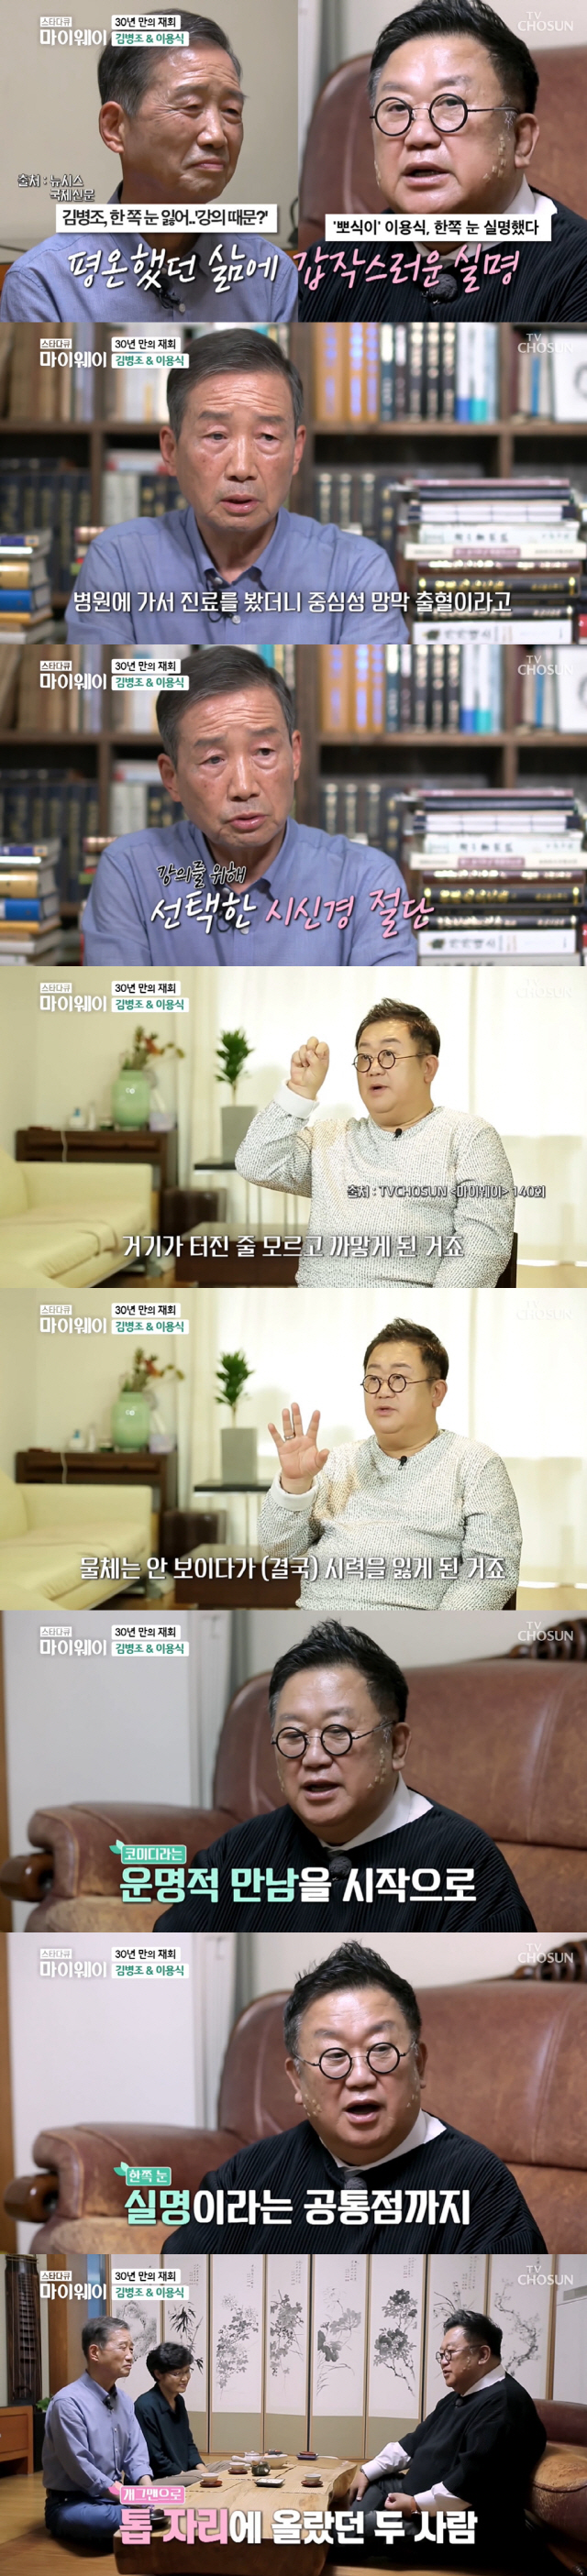  '마이웨이' 김병조, 한학자의 길…이용식과 한쪽눈 실명 '평행이론'